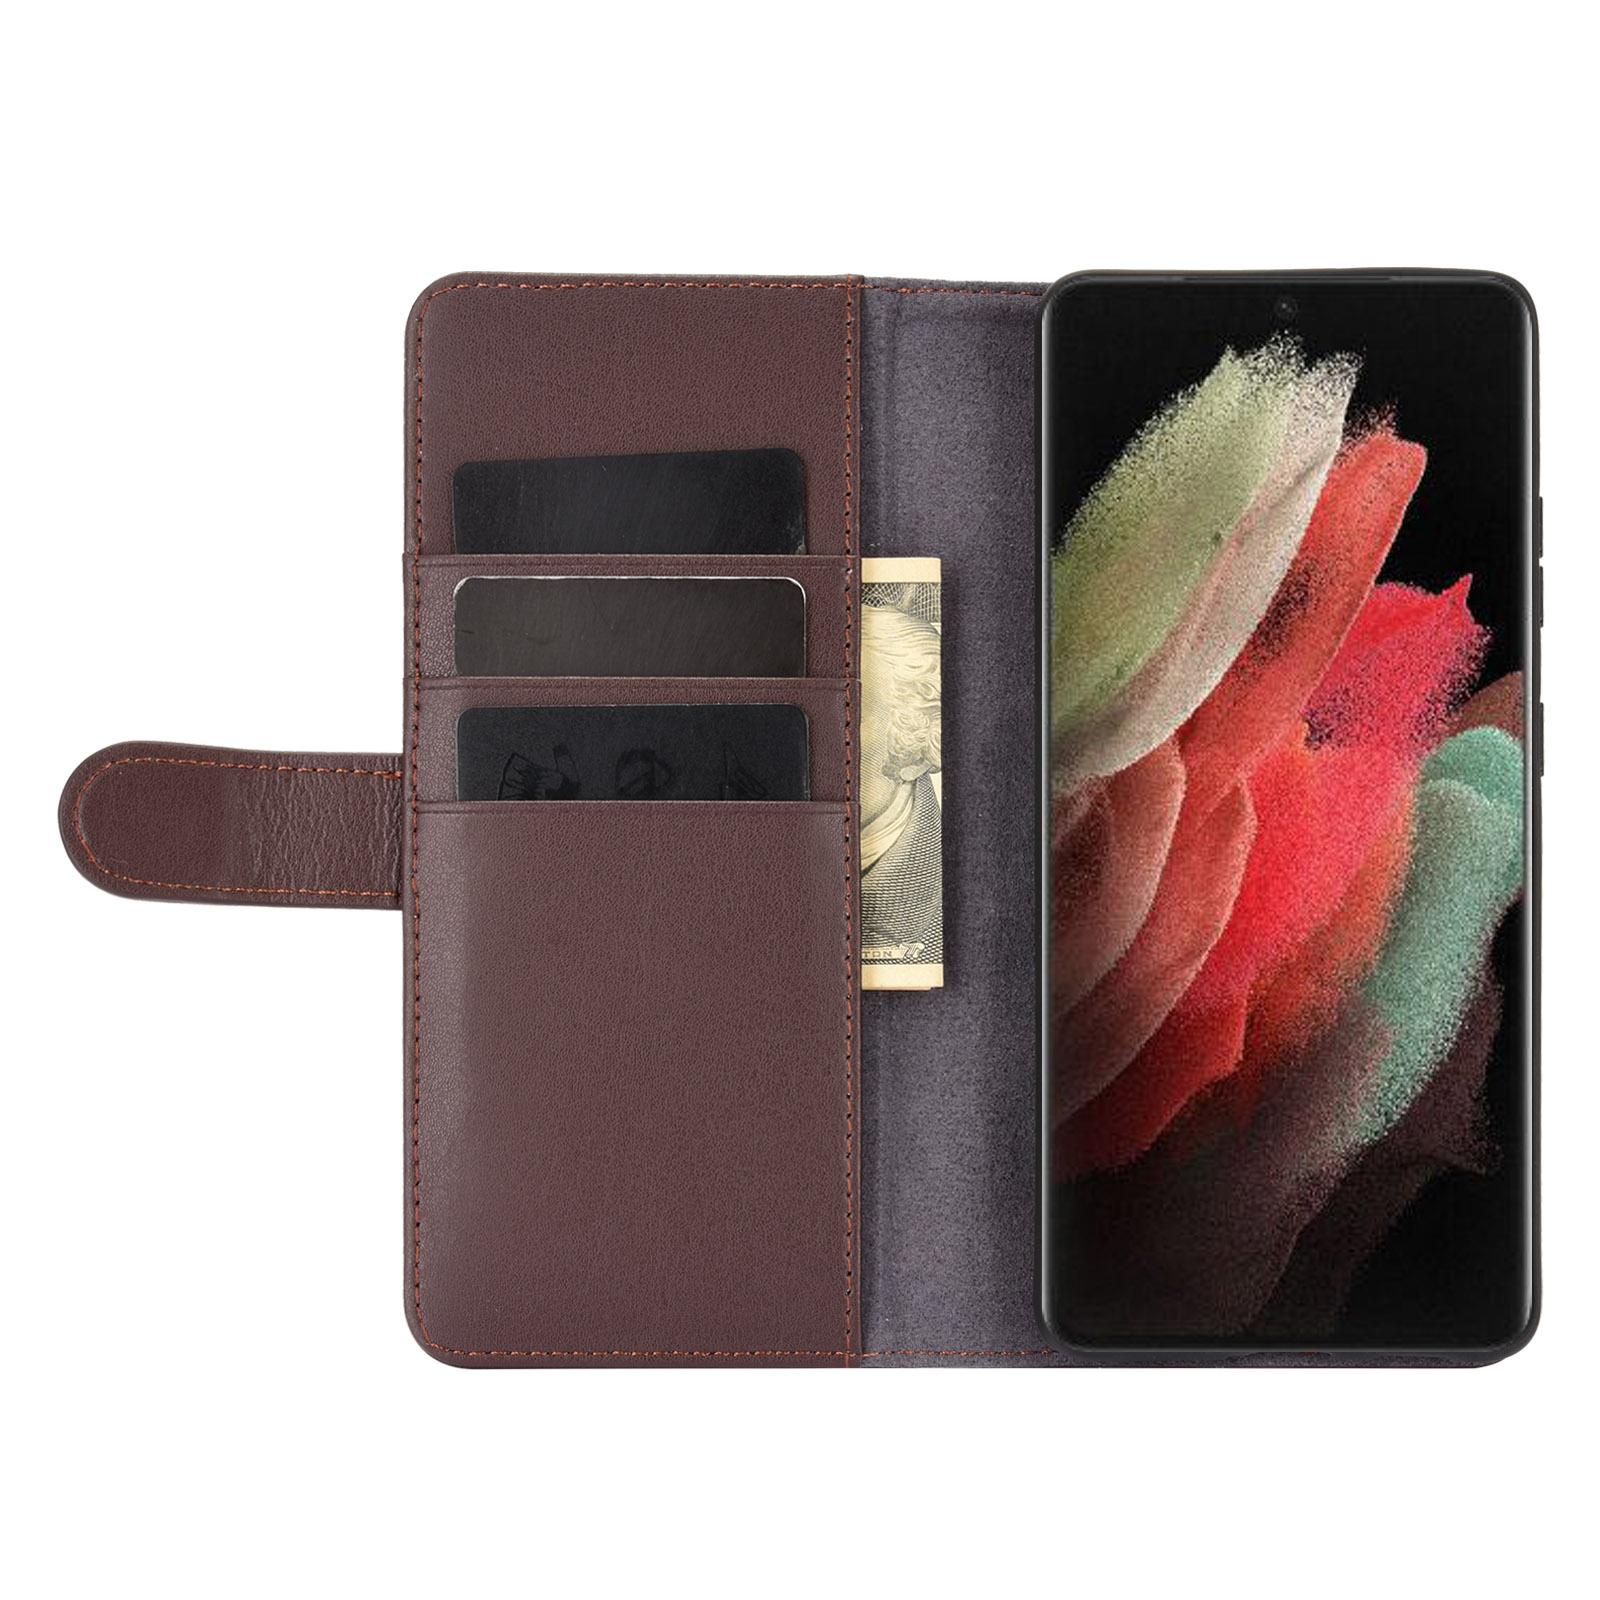 Samsung Galaxy S21 Ultra Plånboksfodral i Äkta Läder, brun